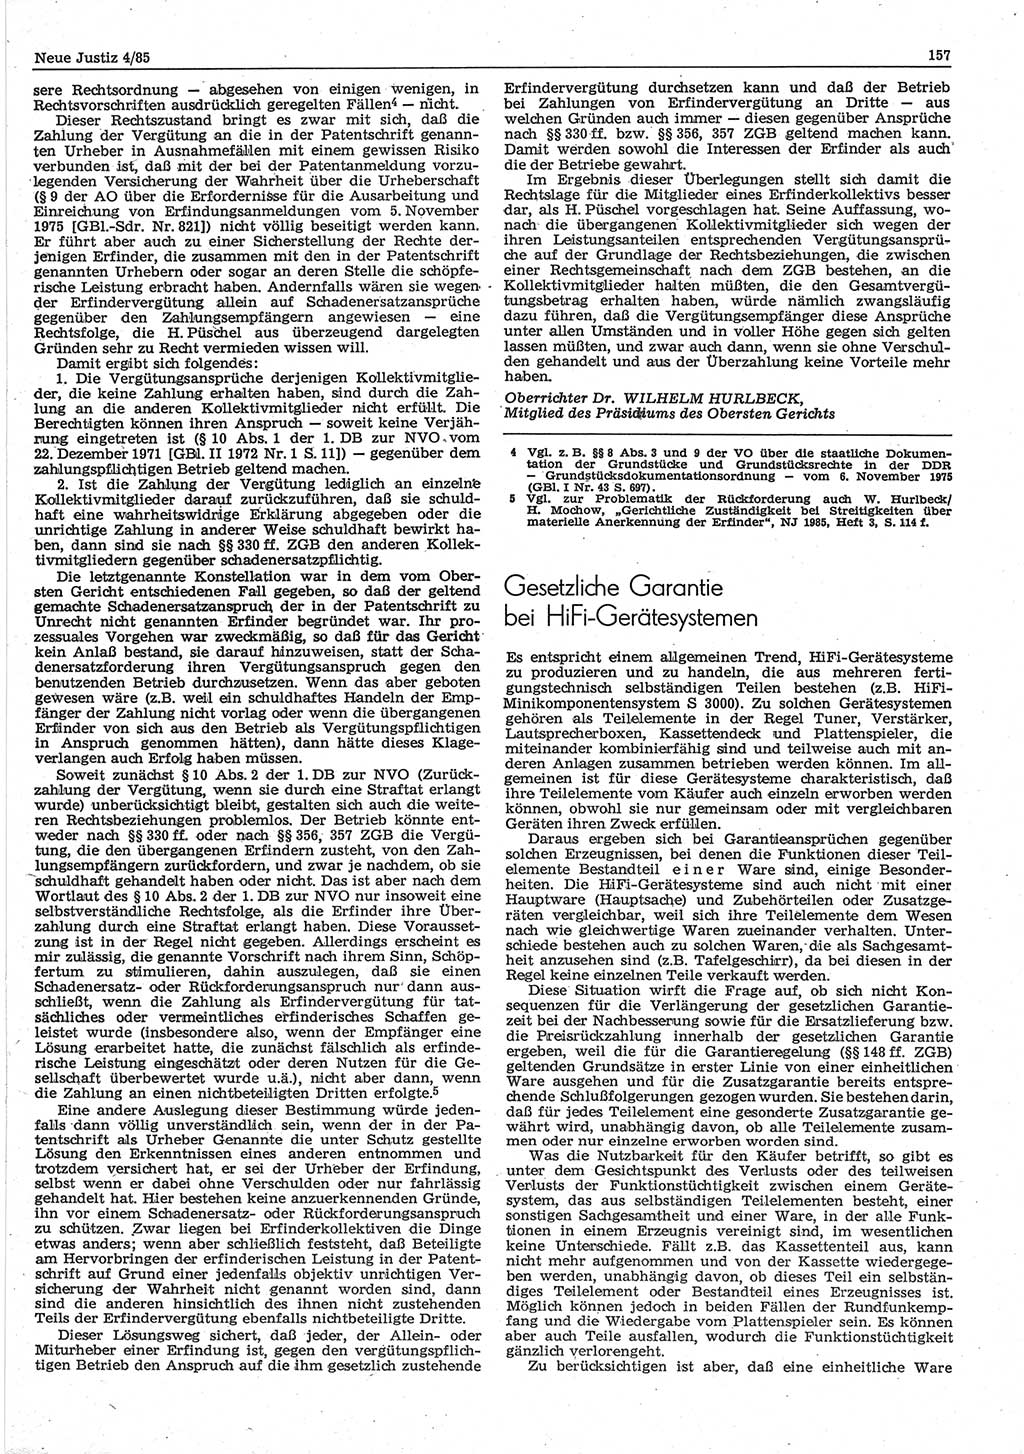 Neue Justiz (NJ), Zeitschrift für sozialistisches Recht und Gesetzlichkeit [Deutsche Demokratische Republik (DDR)], 39. Jahrgang 1985, Seite 157 (NJ DDR 1985, S. 157)